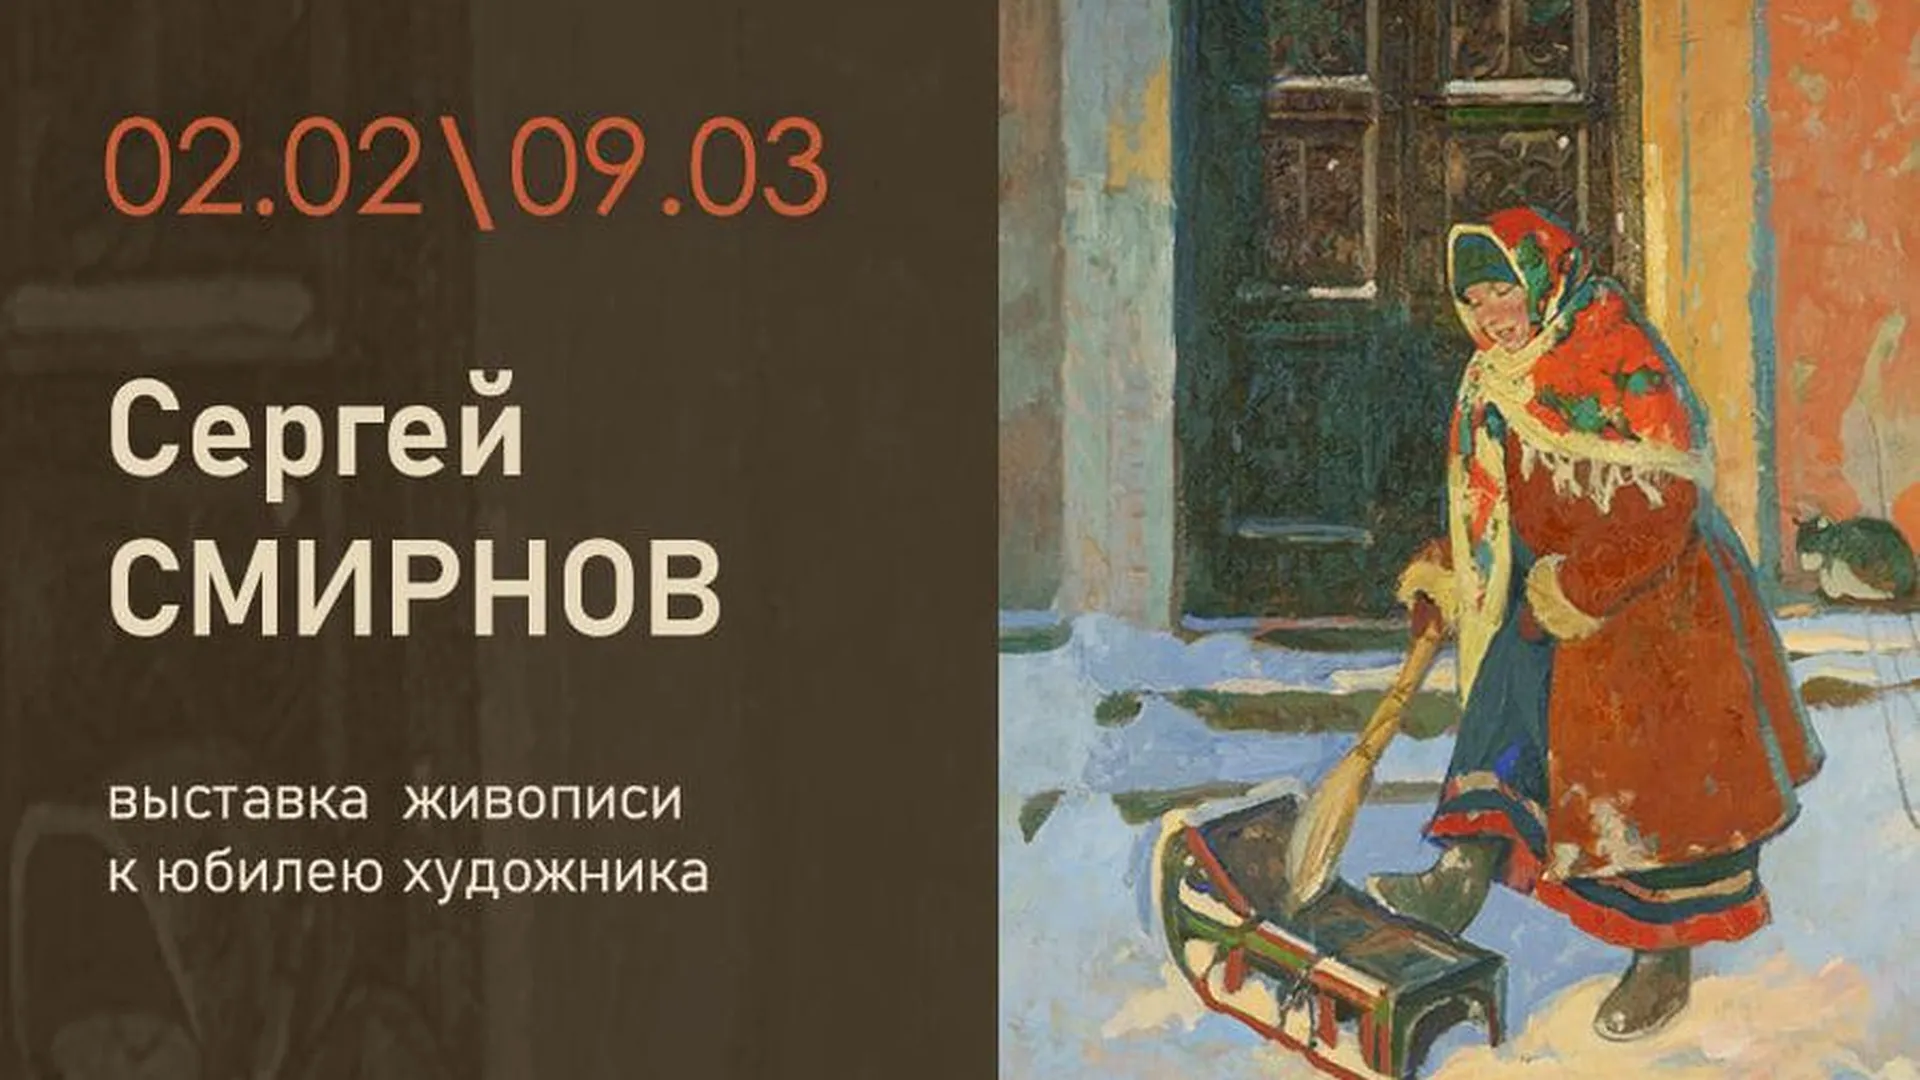 В музее Щелкова 2 февраля откроется выставка живописи заслуженного художника РФ Смирнова